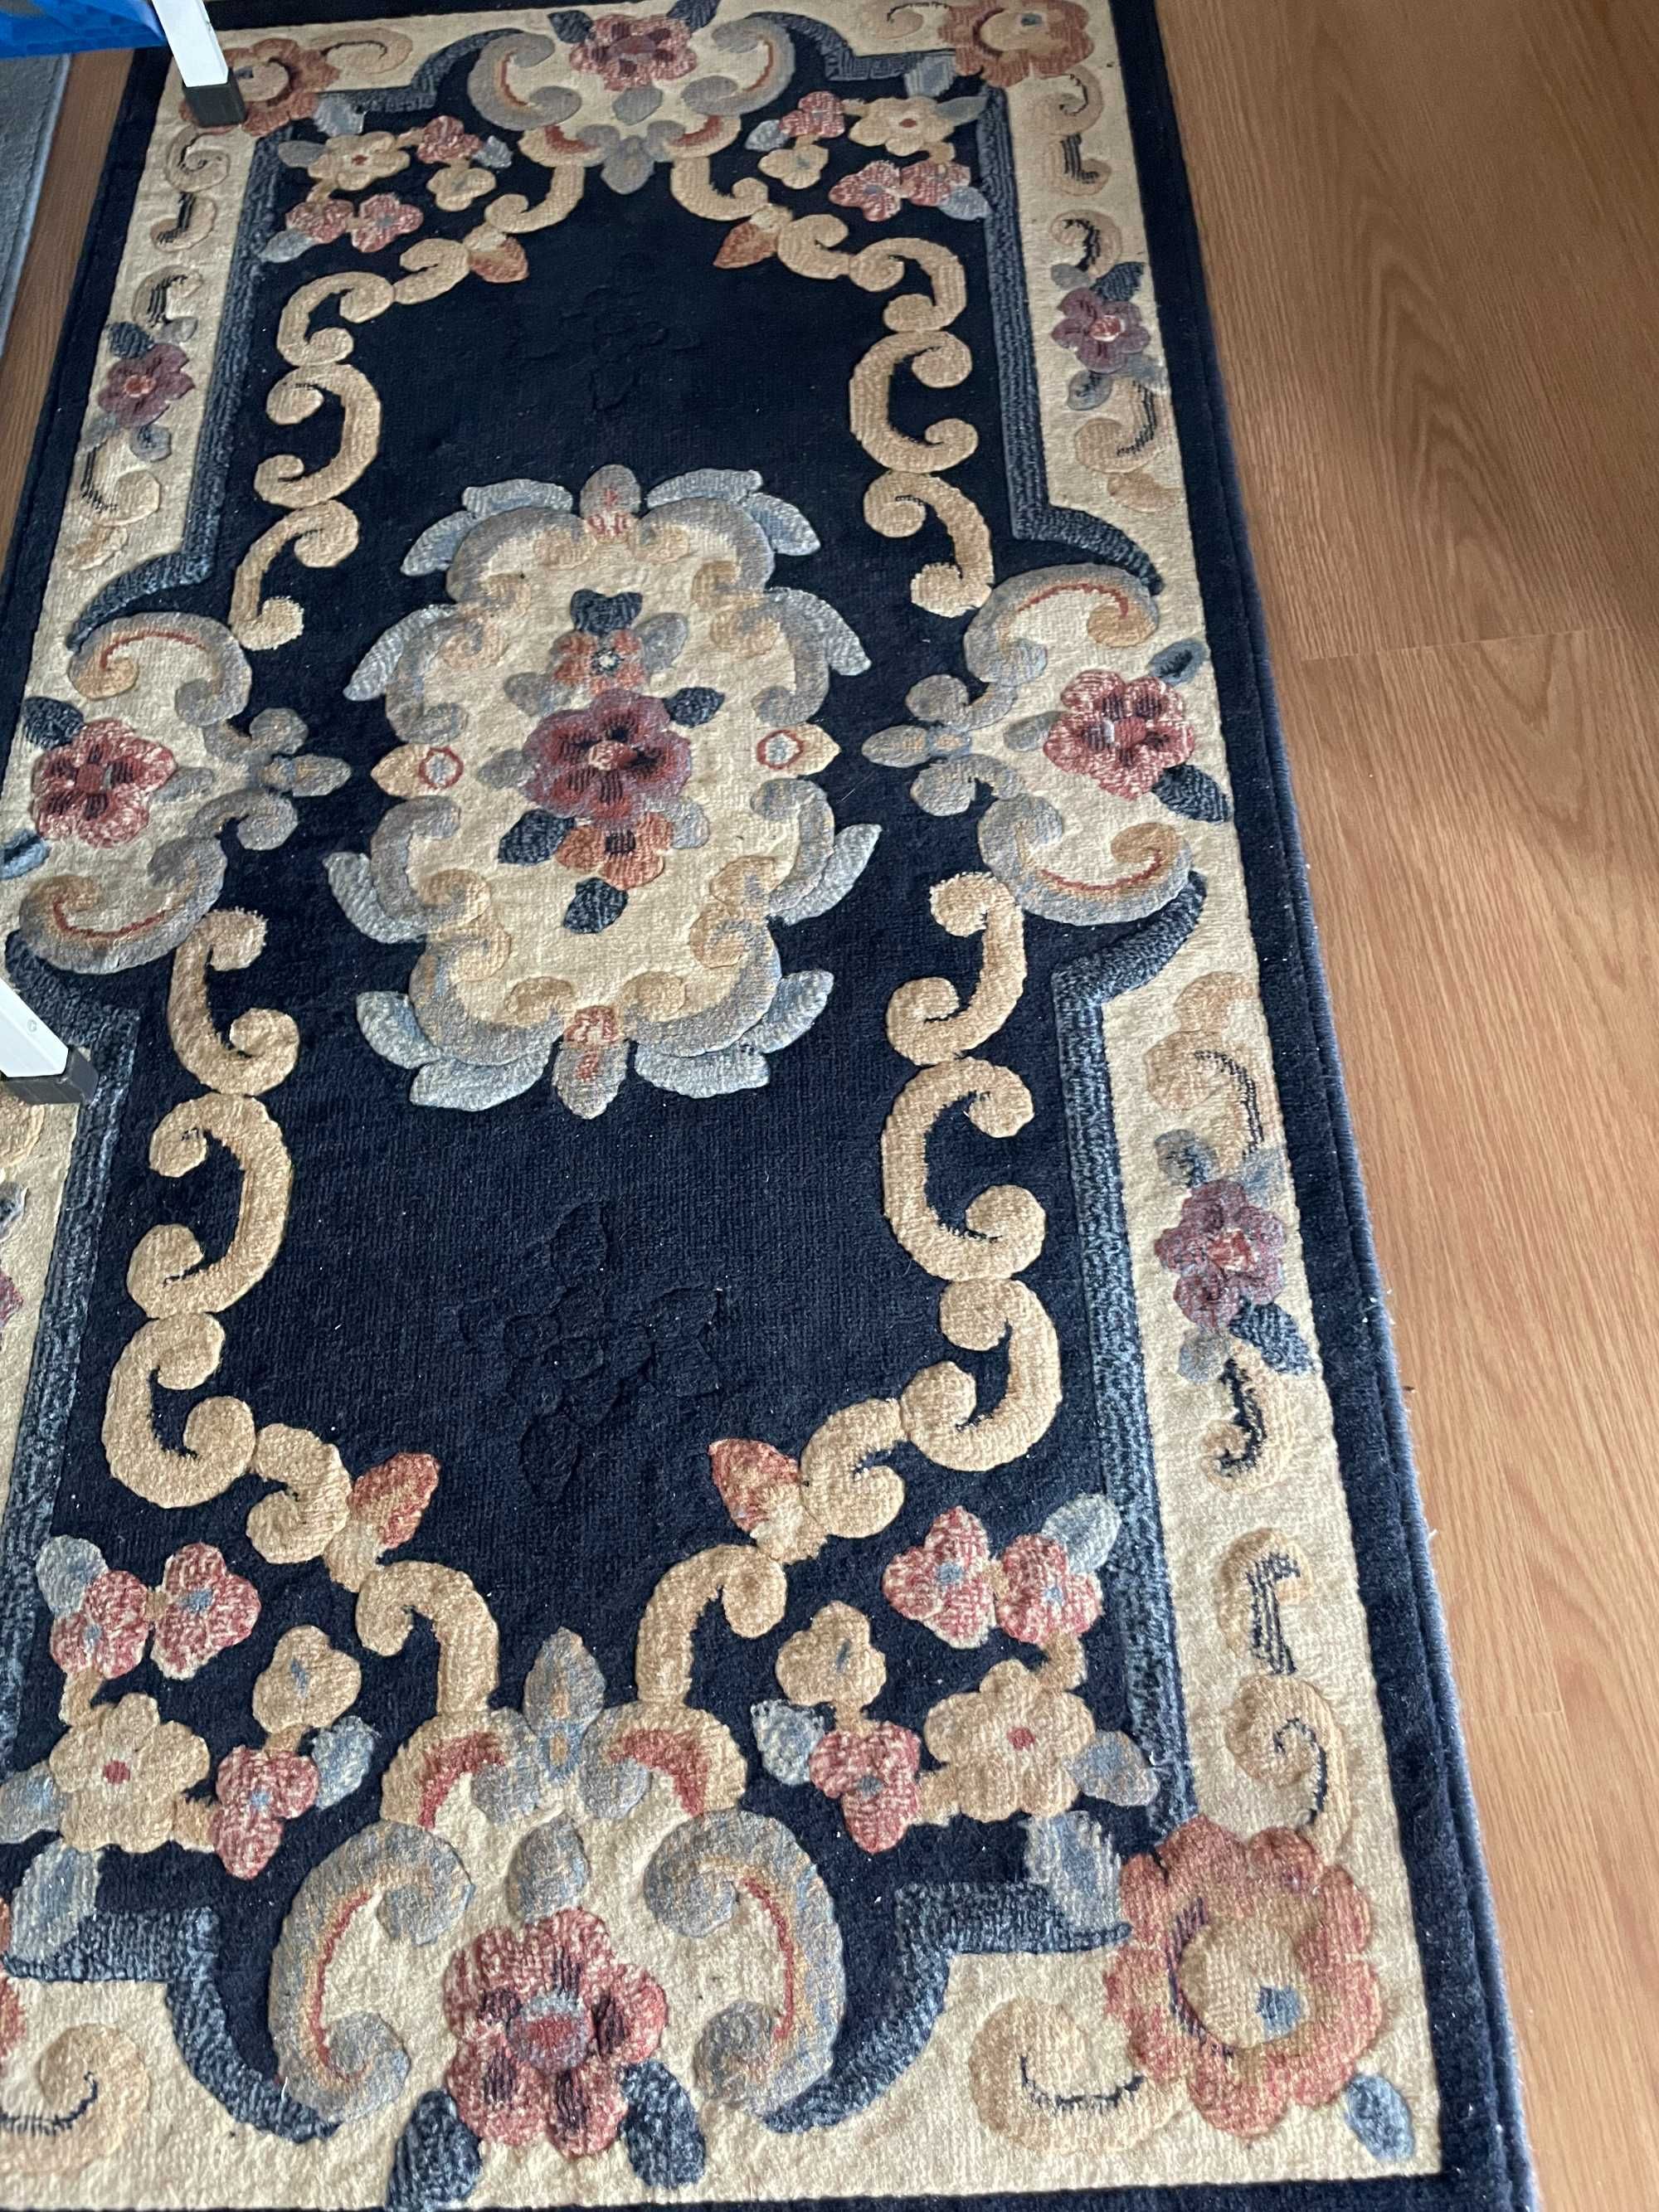 6 Tapetes (2 são em arroiolos) e  1 carpete